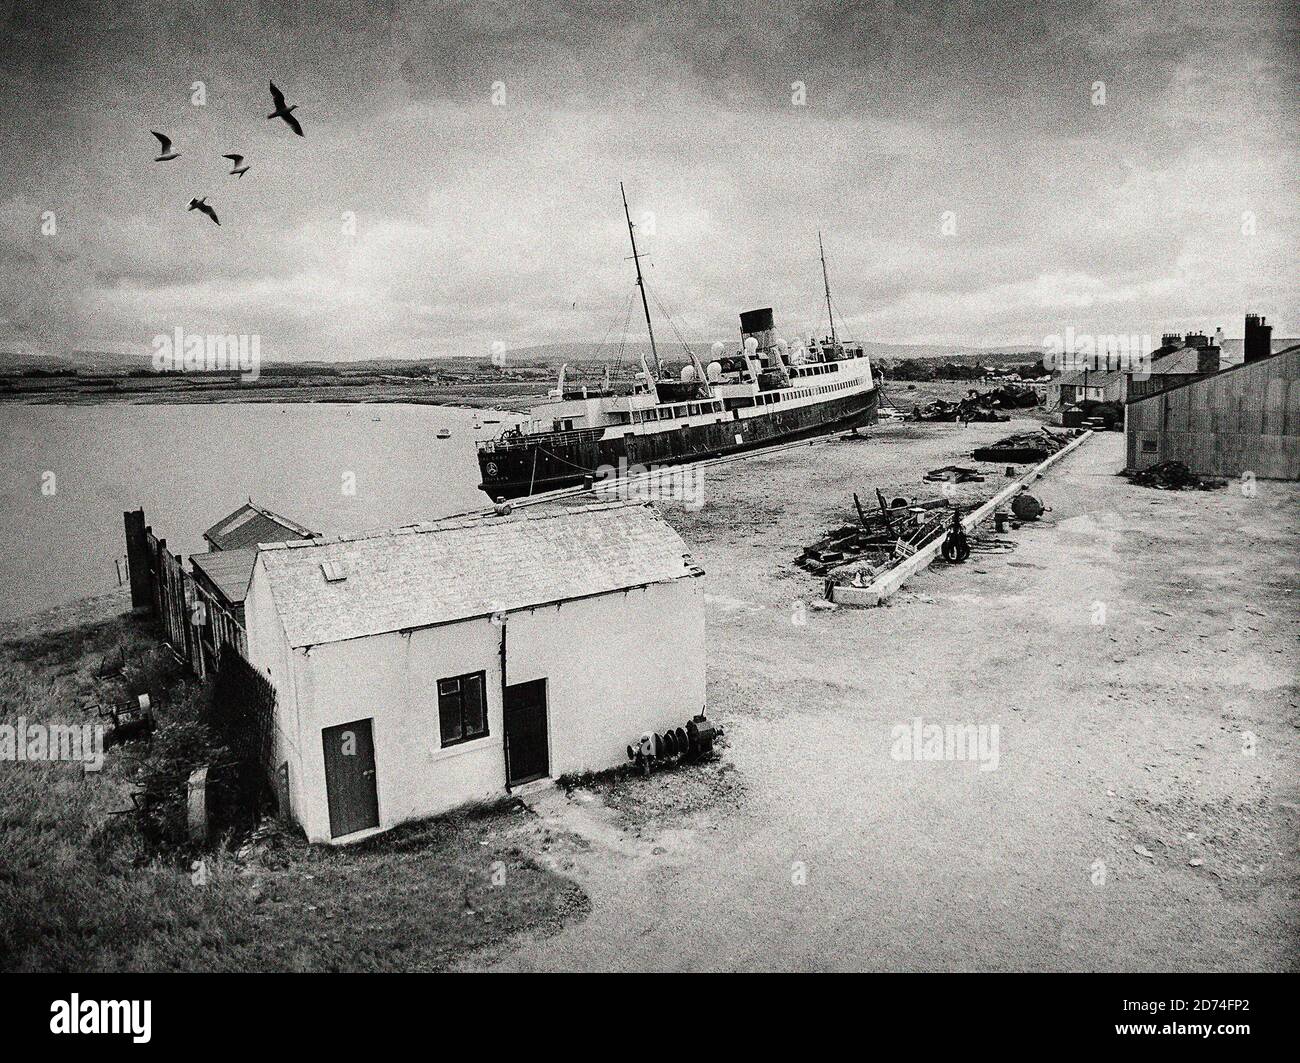 Fotografia d'epoca dal 1975 del Re Orry IV a Glasson Dock, Lancashire, Inghilterra. Costruita per l'Isle of Man Steam Packet Company nel 1946, ha fatto la sua traversata finale da Douglas nell'agosto 1975. Mentre era in attesa di scioglimento, la nave si staccò dal suo ormeggio durante una grave tempesta e si arenò nell'estuario delle Lune, venendo a riposare sulle pianure di fango. Rilocata nell'aprile 1976, è stata finalmente scomposta nel 1979. Foto Stock